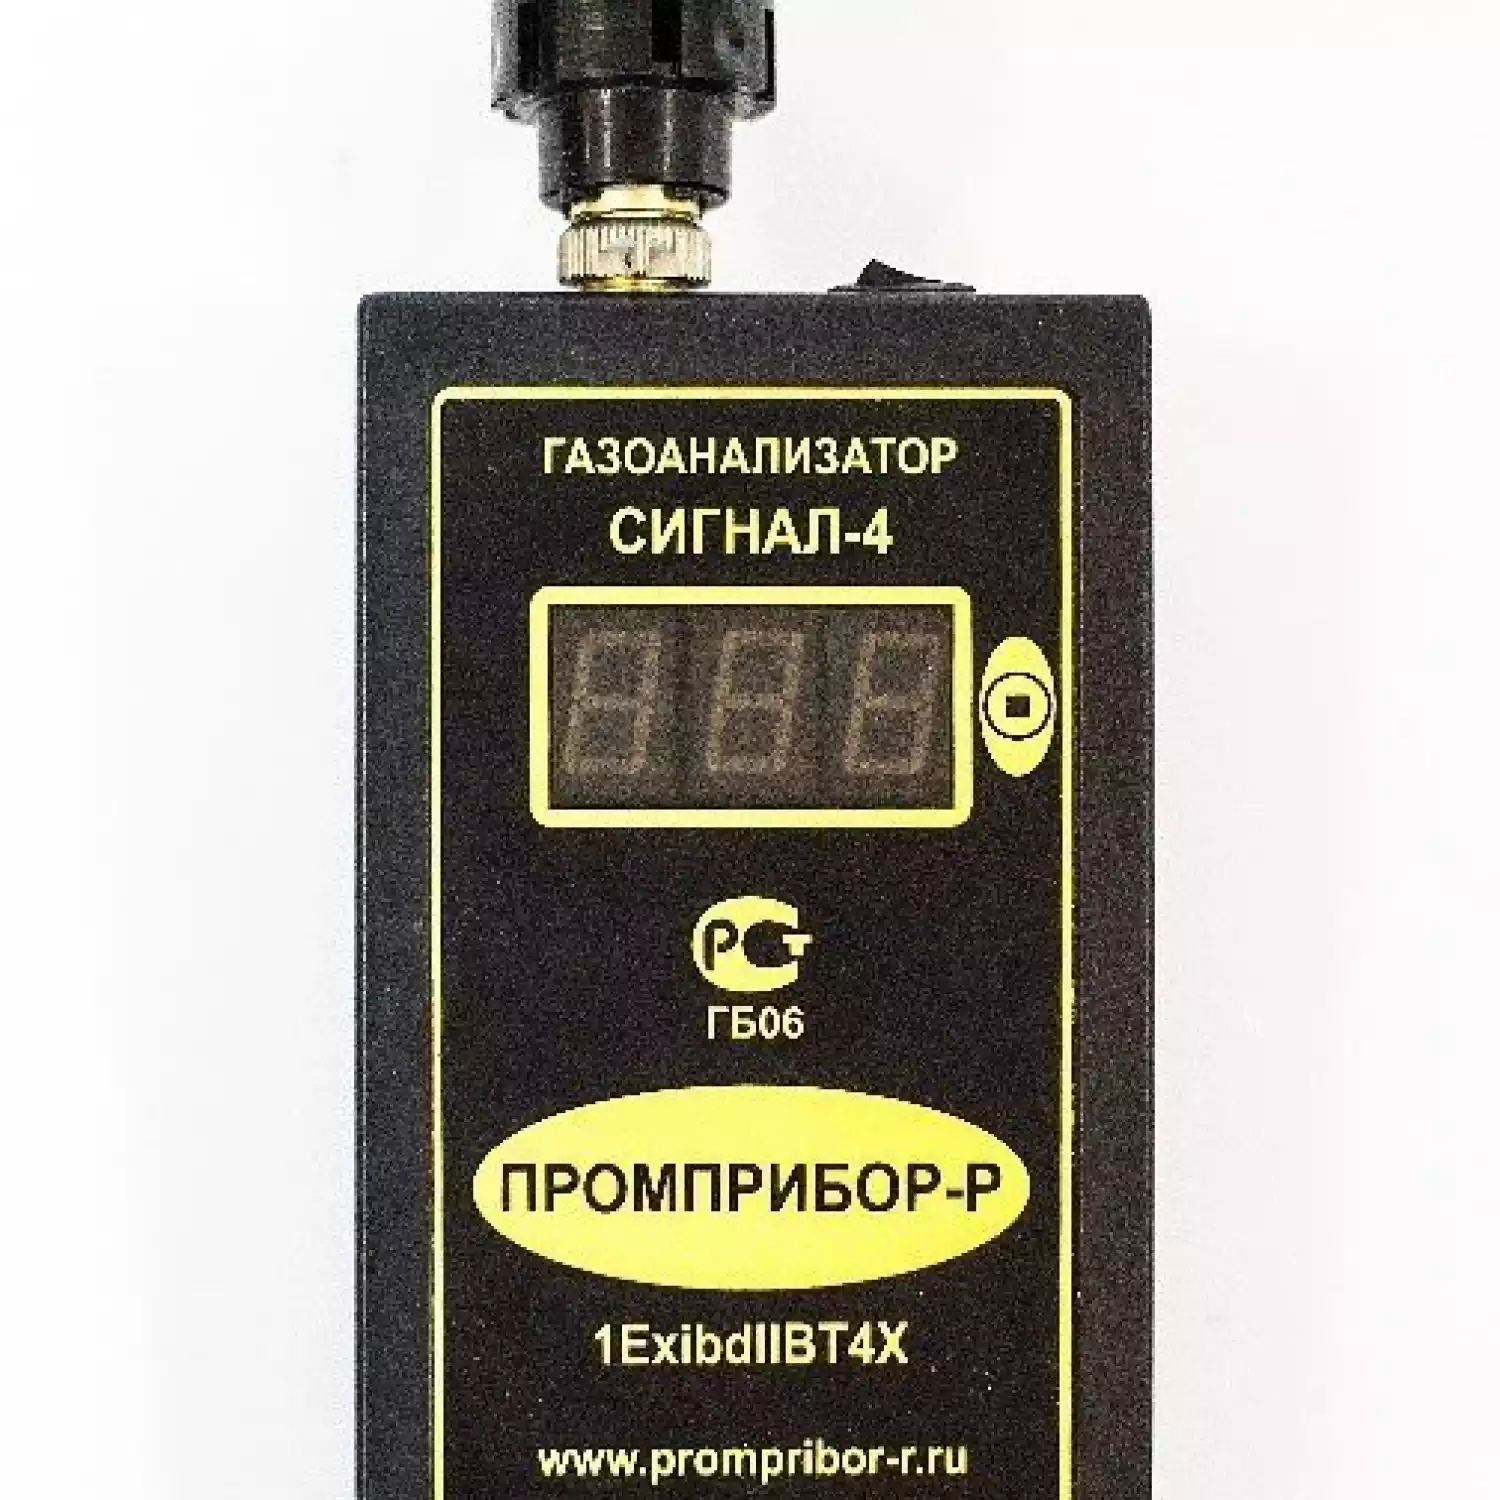 Персональный переносной газоанализатор пропана (С3Н8) Сигнал-4 (Оптический сенсор) - 1